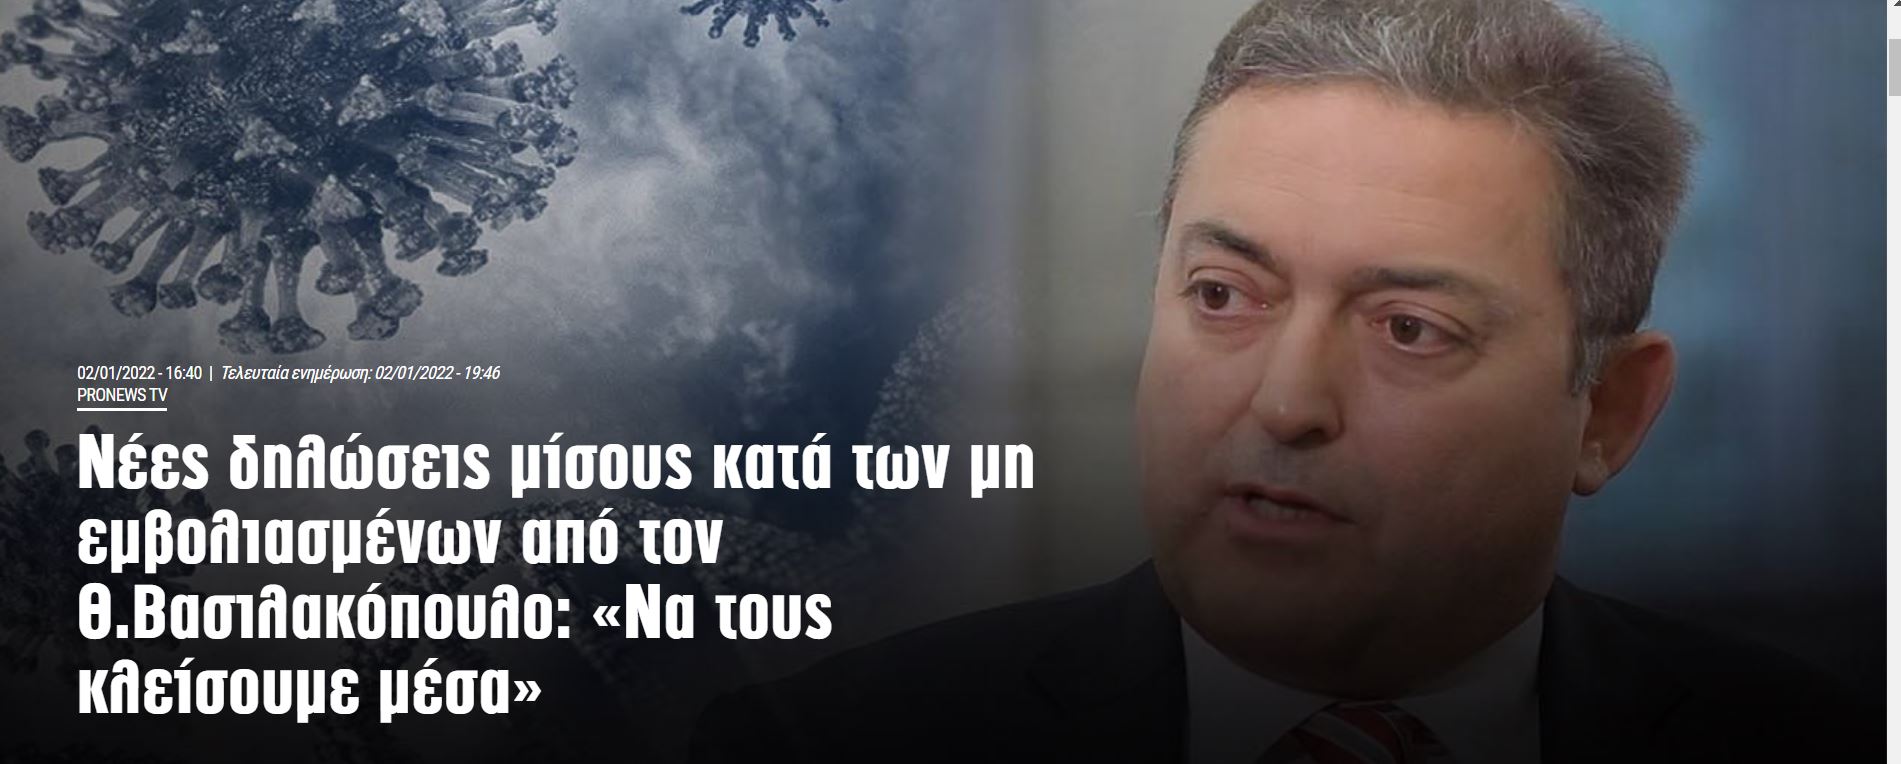 «Αντί να κλείνει η χώρα να «κλείνονται» οι ανεμβολίαστοι, και τα σχολεία να ανοίξουν κανονικά στις 10 Ιανουαρίου», είπε  μέσω του ΣΚΑΪ ο Βασιλακόπουλος.